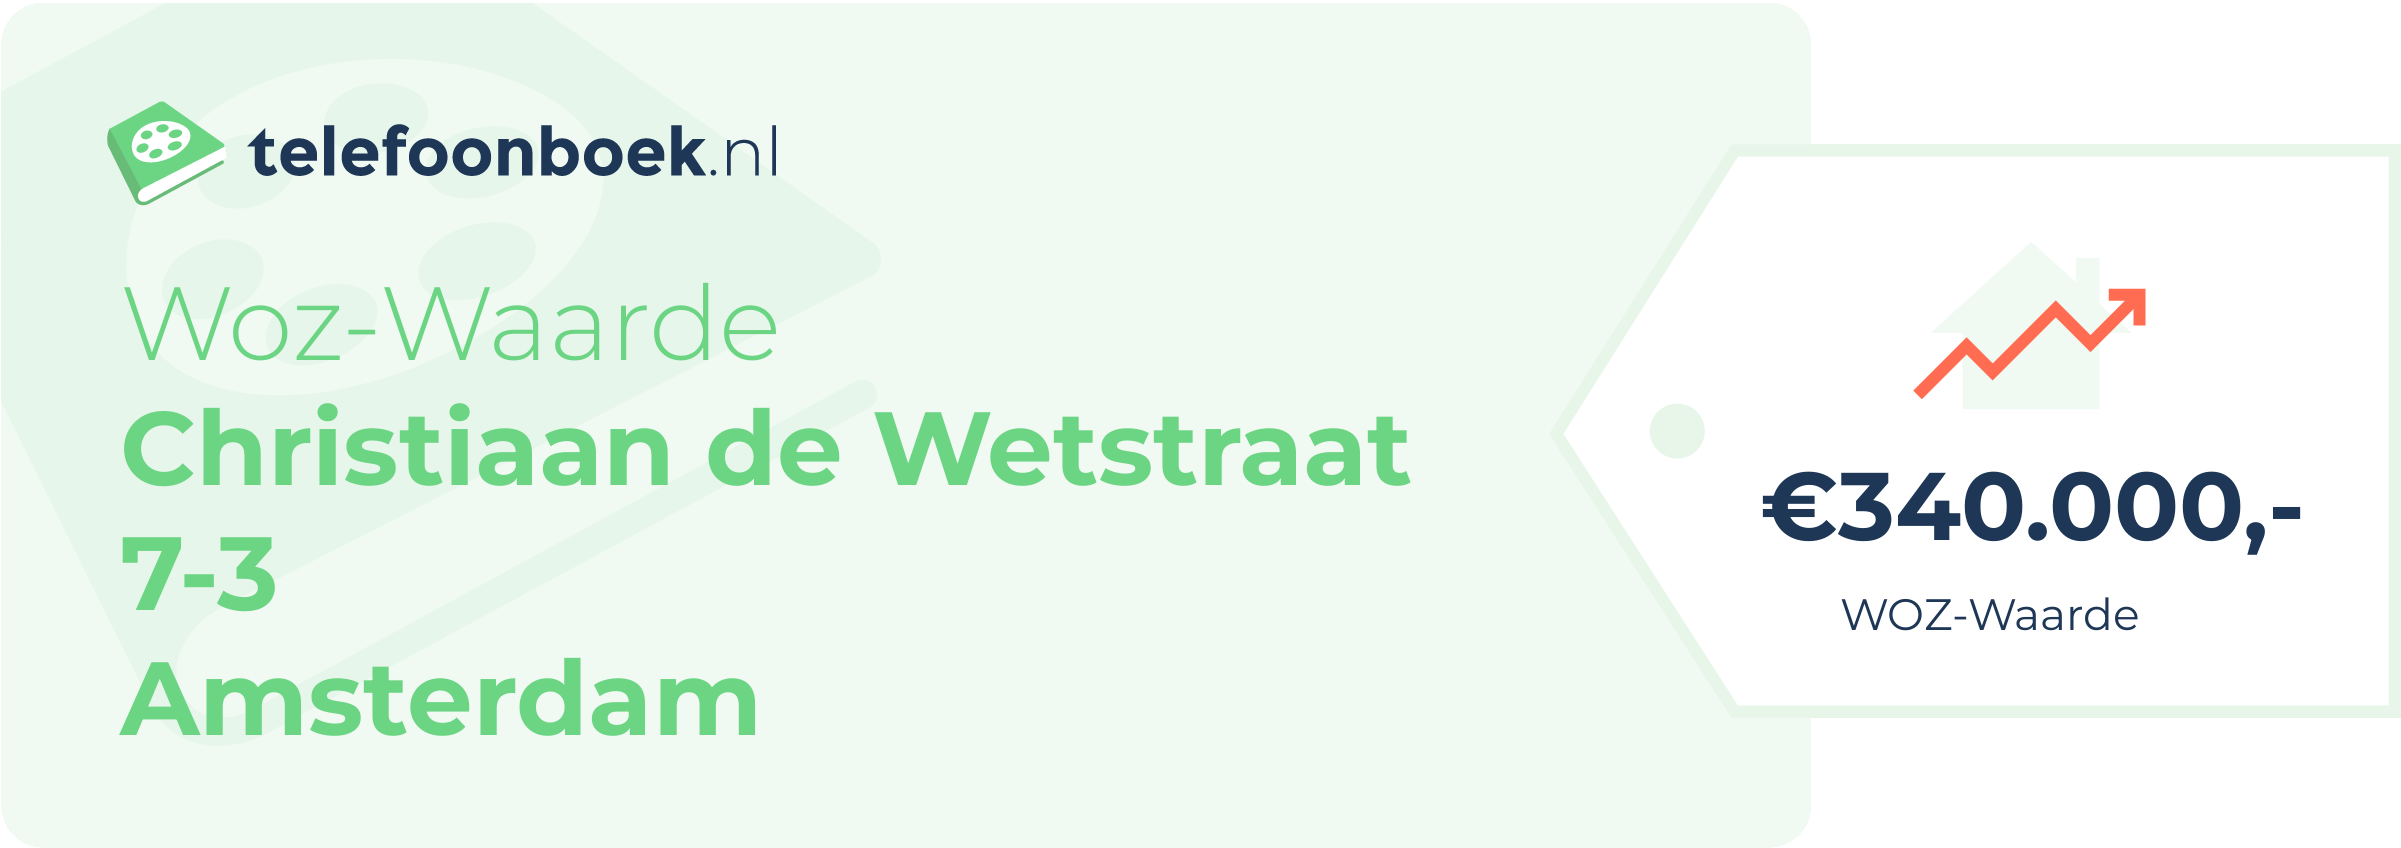 WOZ-waarde Christiaan De Wetstraat 7-3 Amsterdam